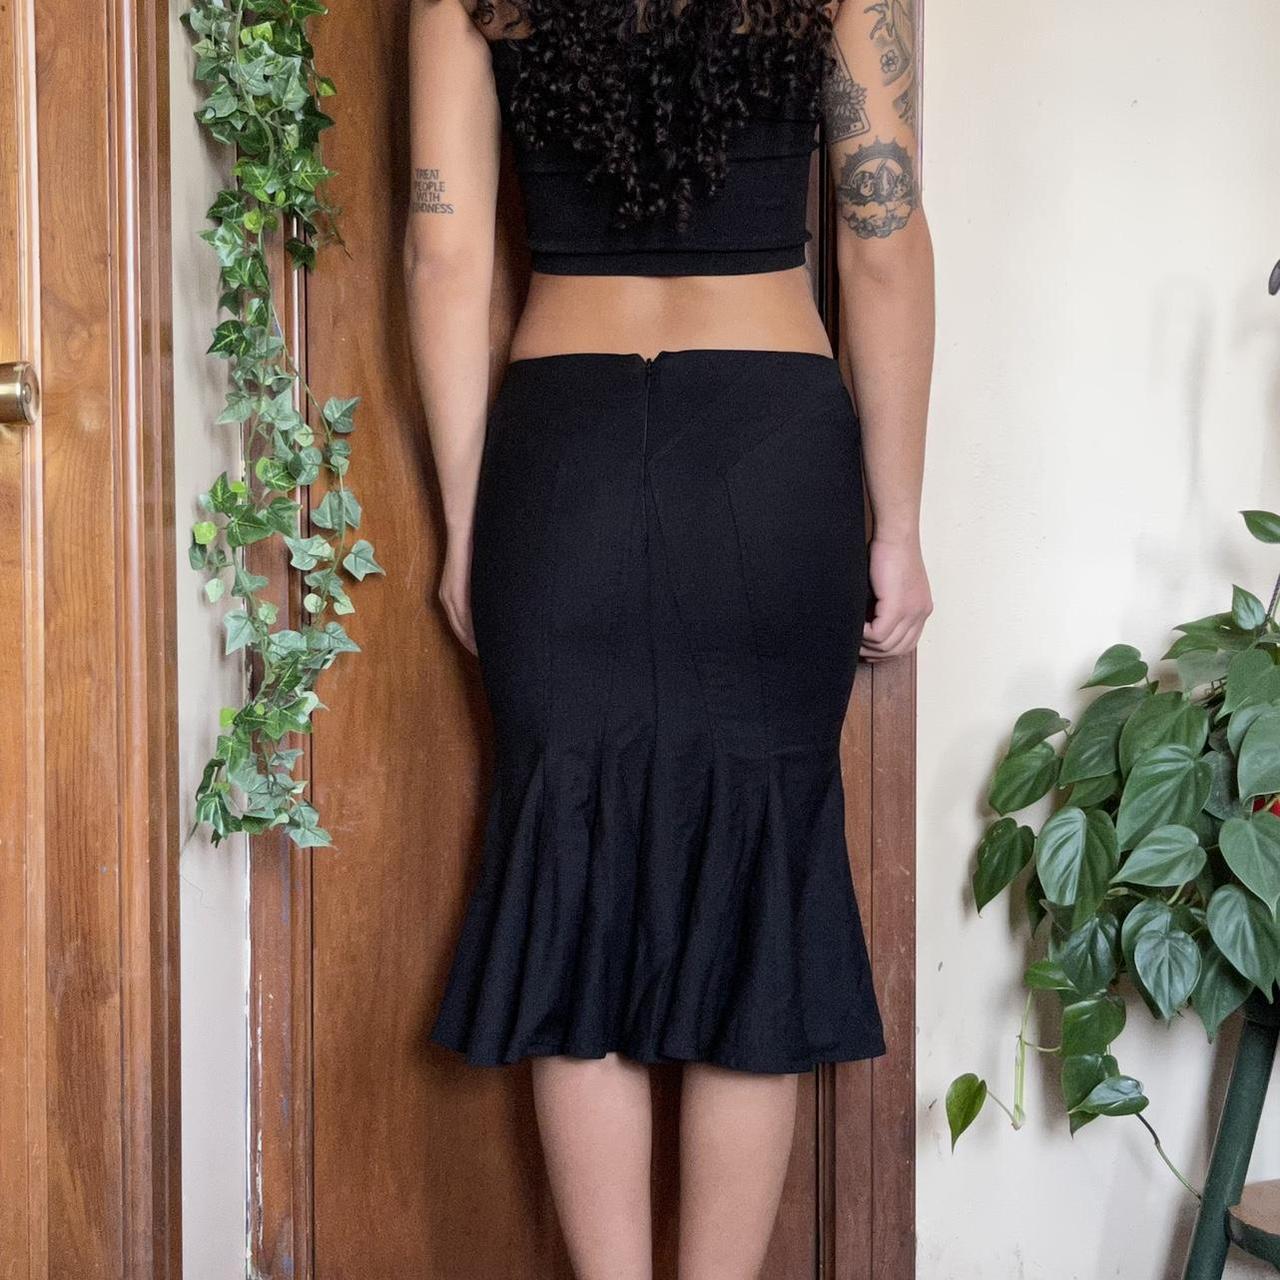 Bebe Women's Black Skirt (3)